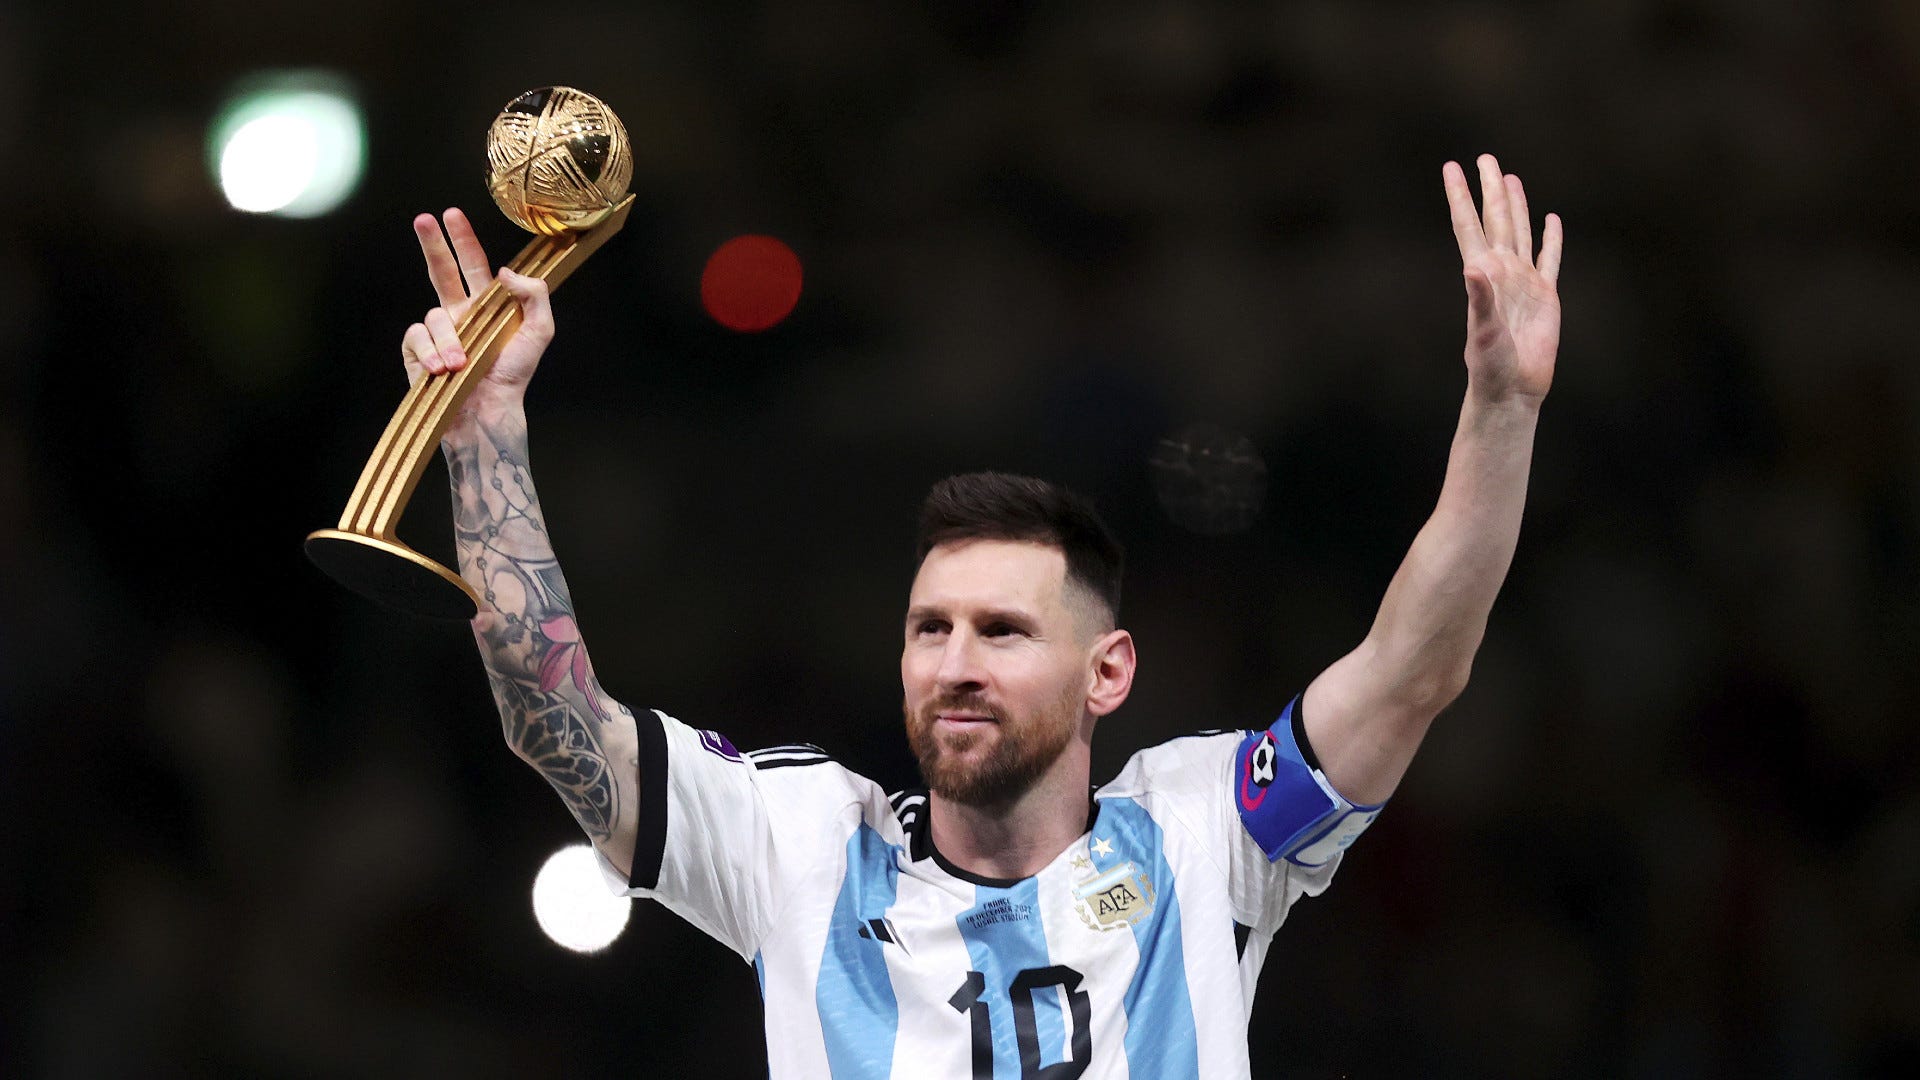 Với những thành tích đáng kinh ngạc của mình trong lịch sử của bóng đá thế giới, Messi là một trong những cầu thủ vĩ đại nhất mọi thời đại. Dù cho anh chưa thể giành được chức vô địch World Cup cùng với đội tuyển Argentina, Messi vẫn là một trong những ngôi sao sáng giá nhất của bóng đá thế giới. Hãy xem lại những khoảnh khắc đáng nhớ nhất của Messi trong lịch sử World Cup để hiểu thêm về sự nghiệp và danh tiếng của anh.